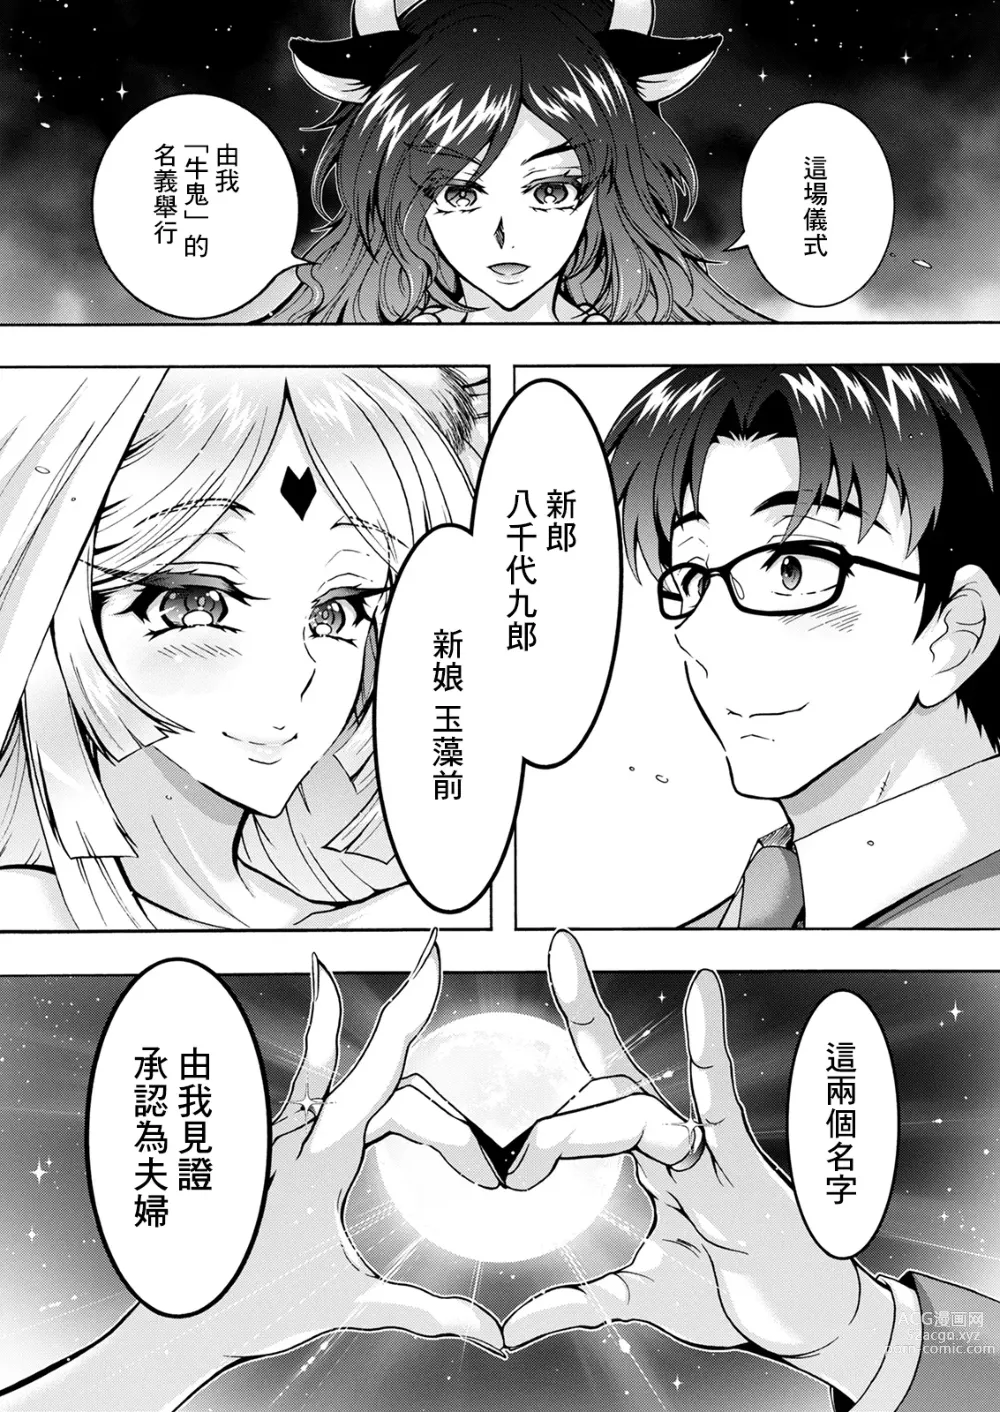 Page 5 of manga Youkai Ecchicchi Saishuuwa